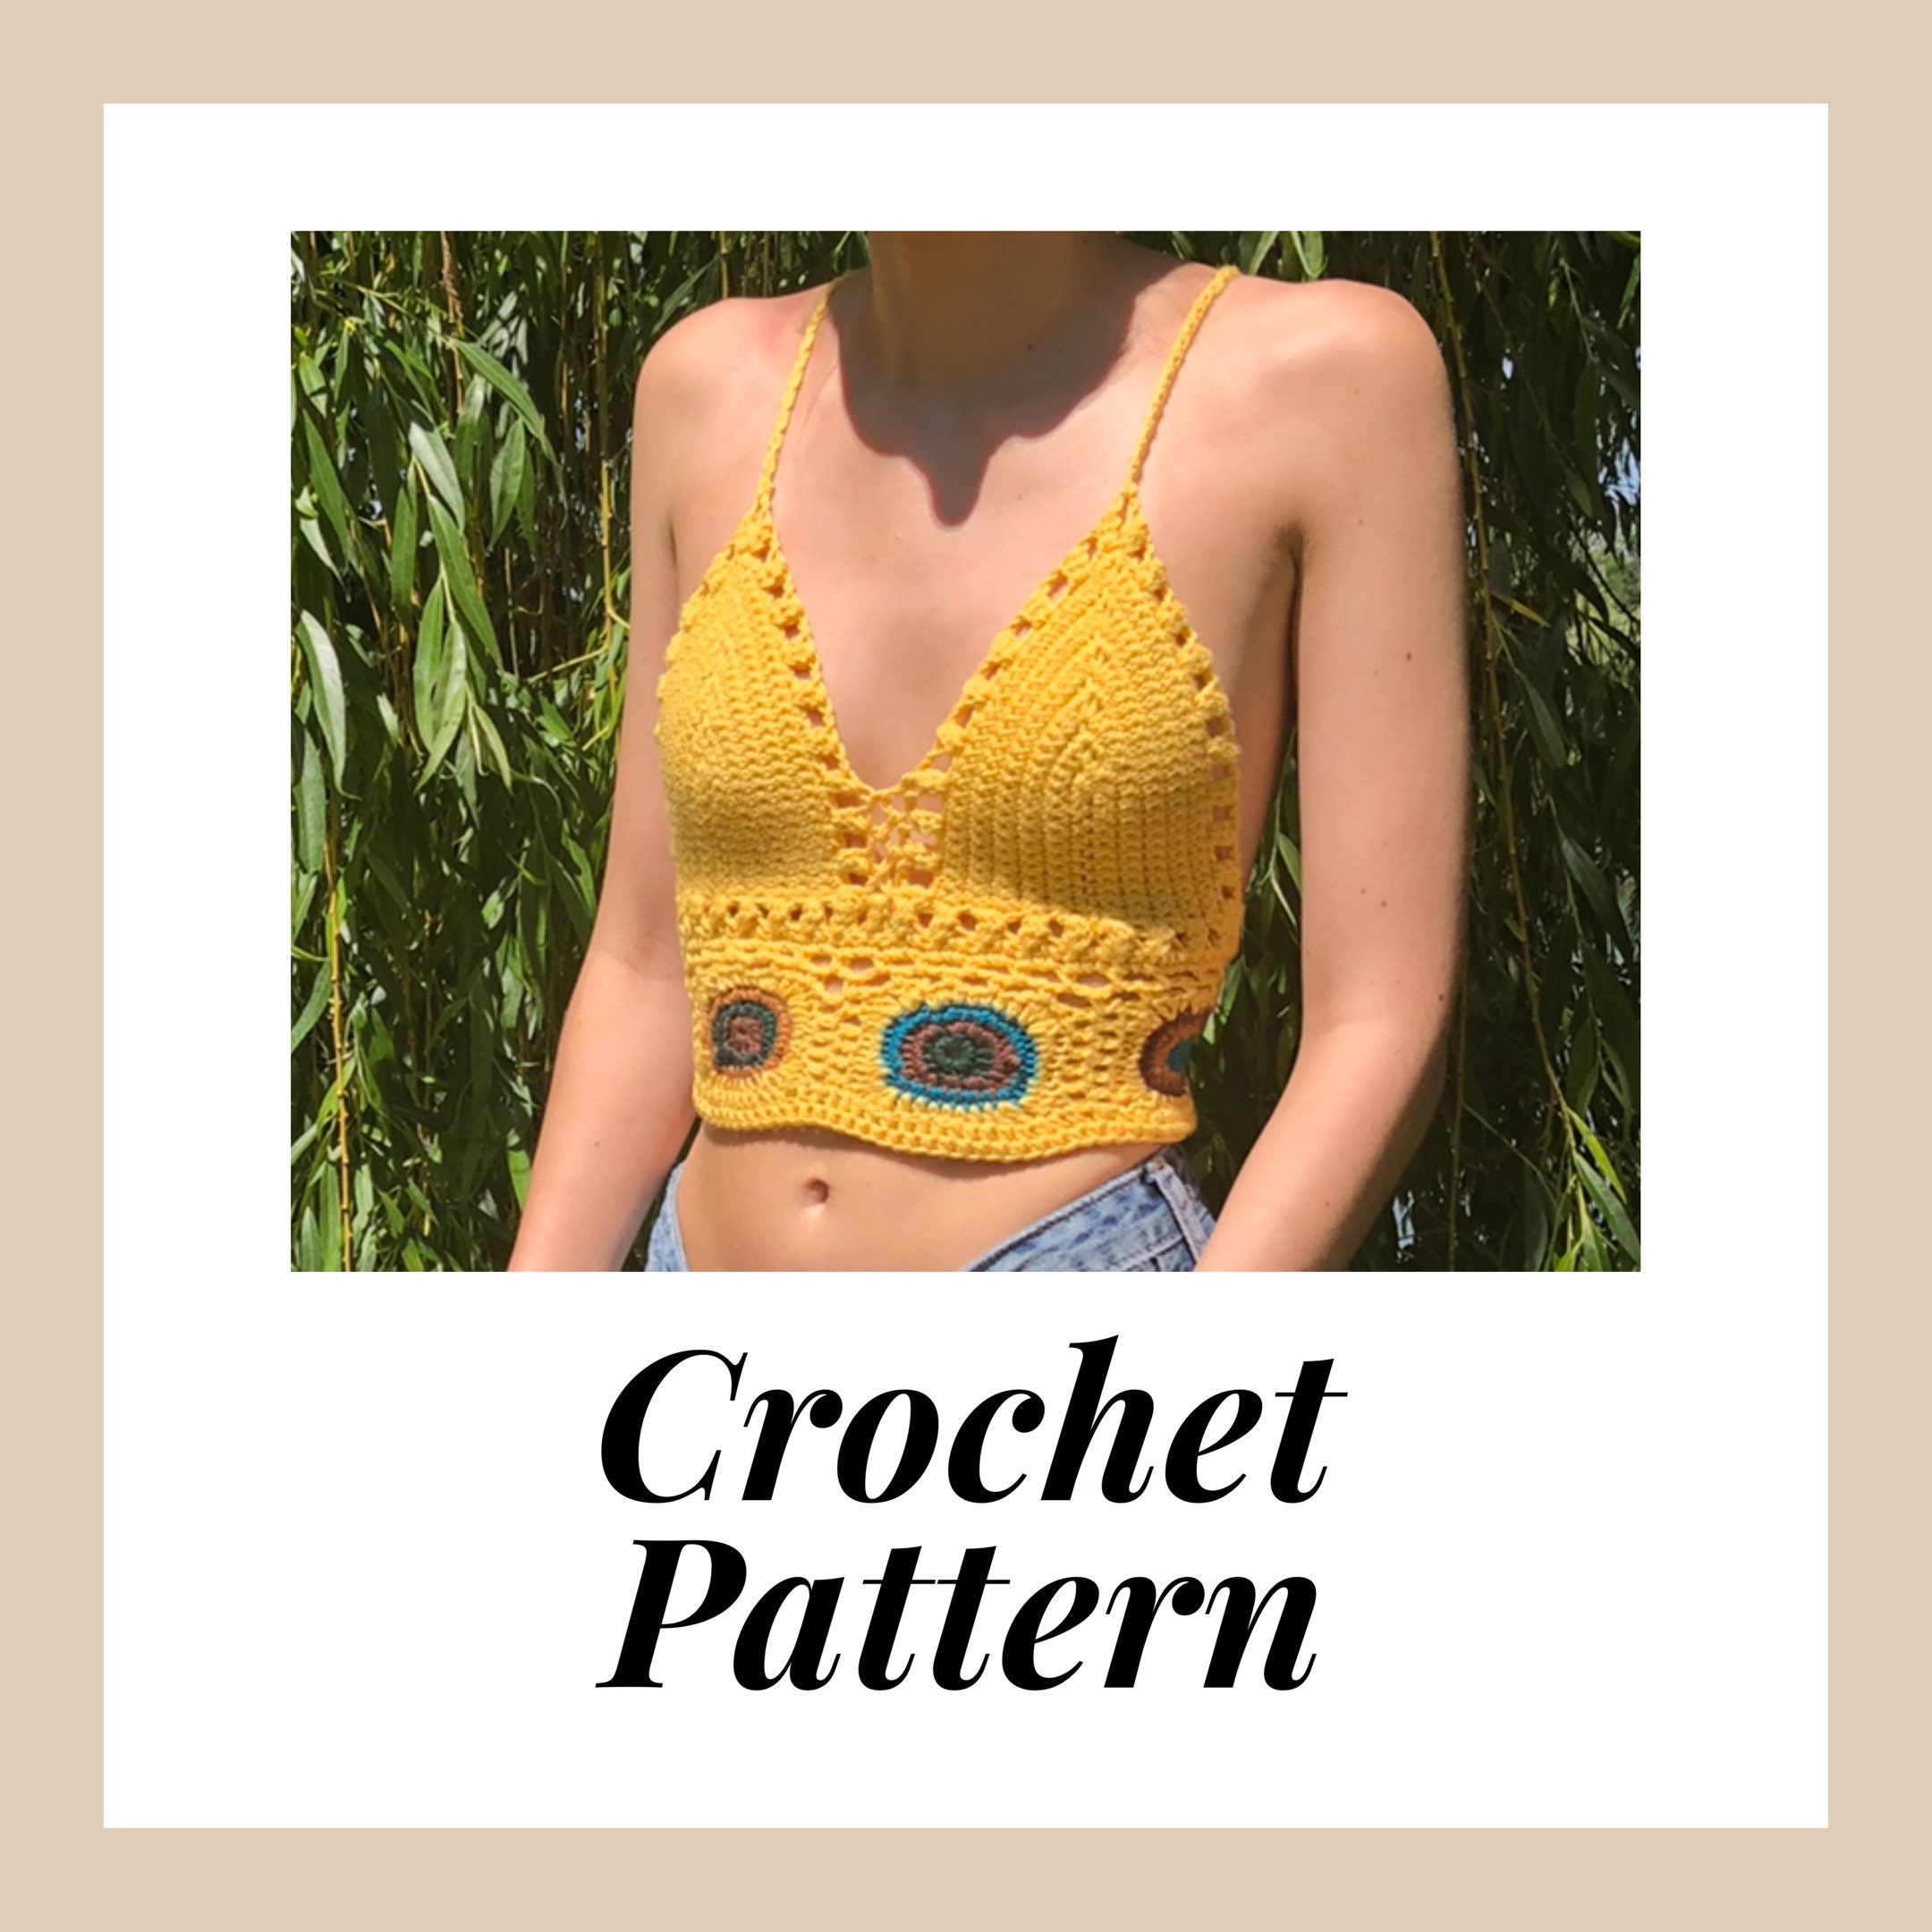 Crochet Crop Top PATTERN, Crochet Bralette PATTERN, Crochet Top PATTERN,  Festival Crop Top, Crochet Top, Crochet Bikini Top, Crochet Bra -   Canada